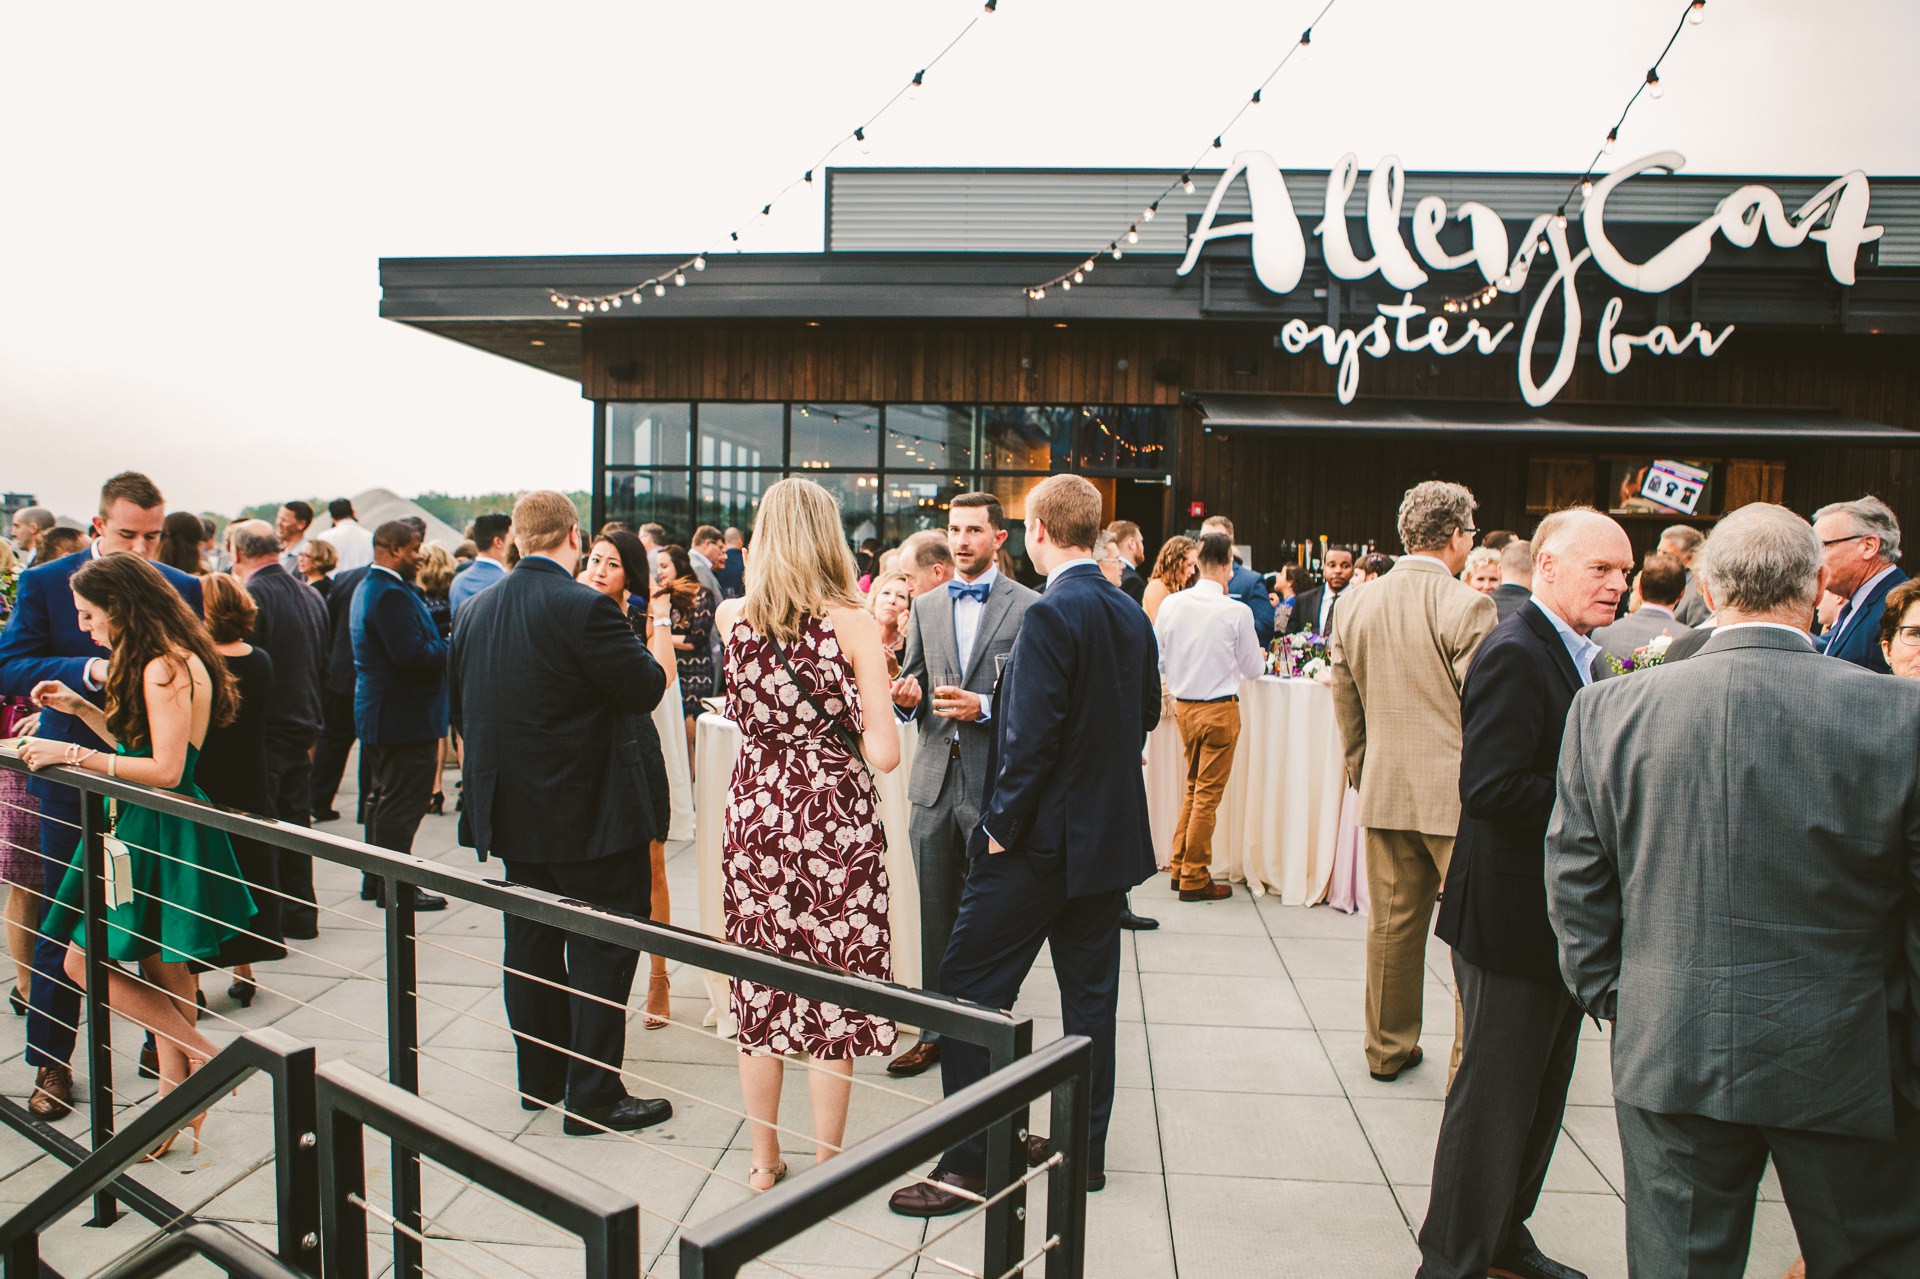 Aloft Hotel Alley Cat Oyster Bar Wedding in Cleveland 53.jpg